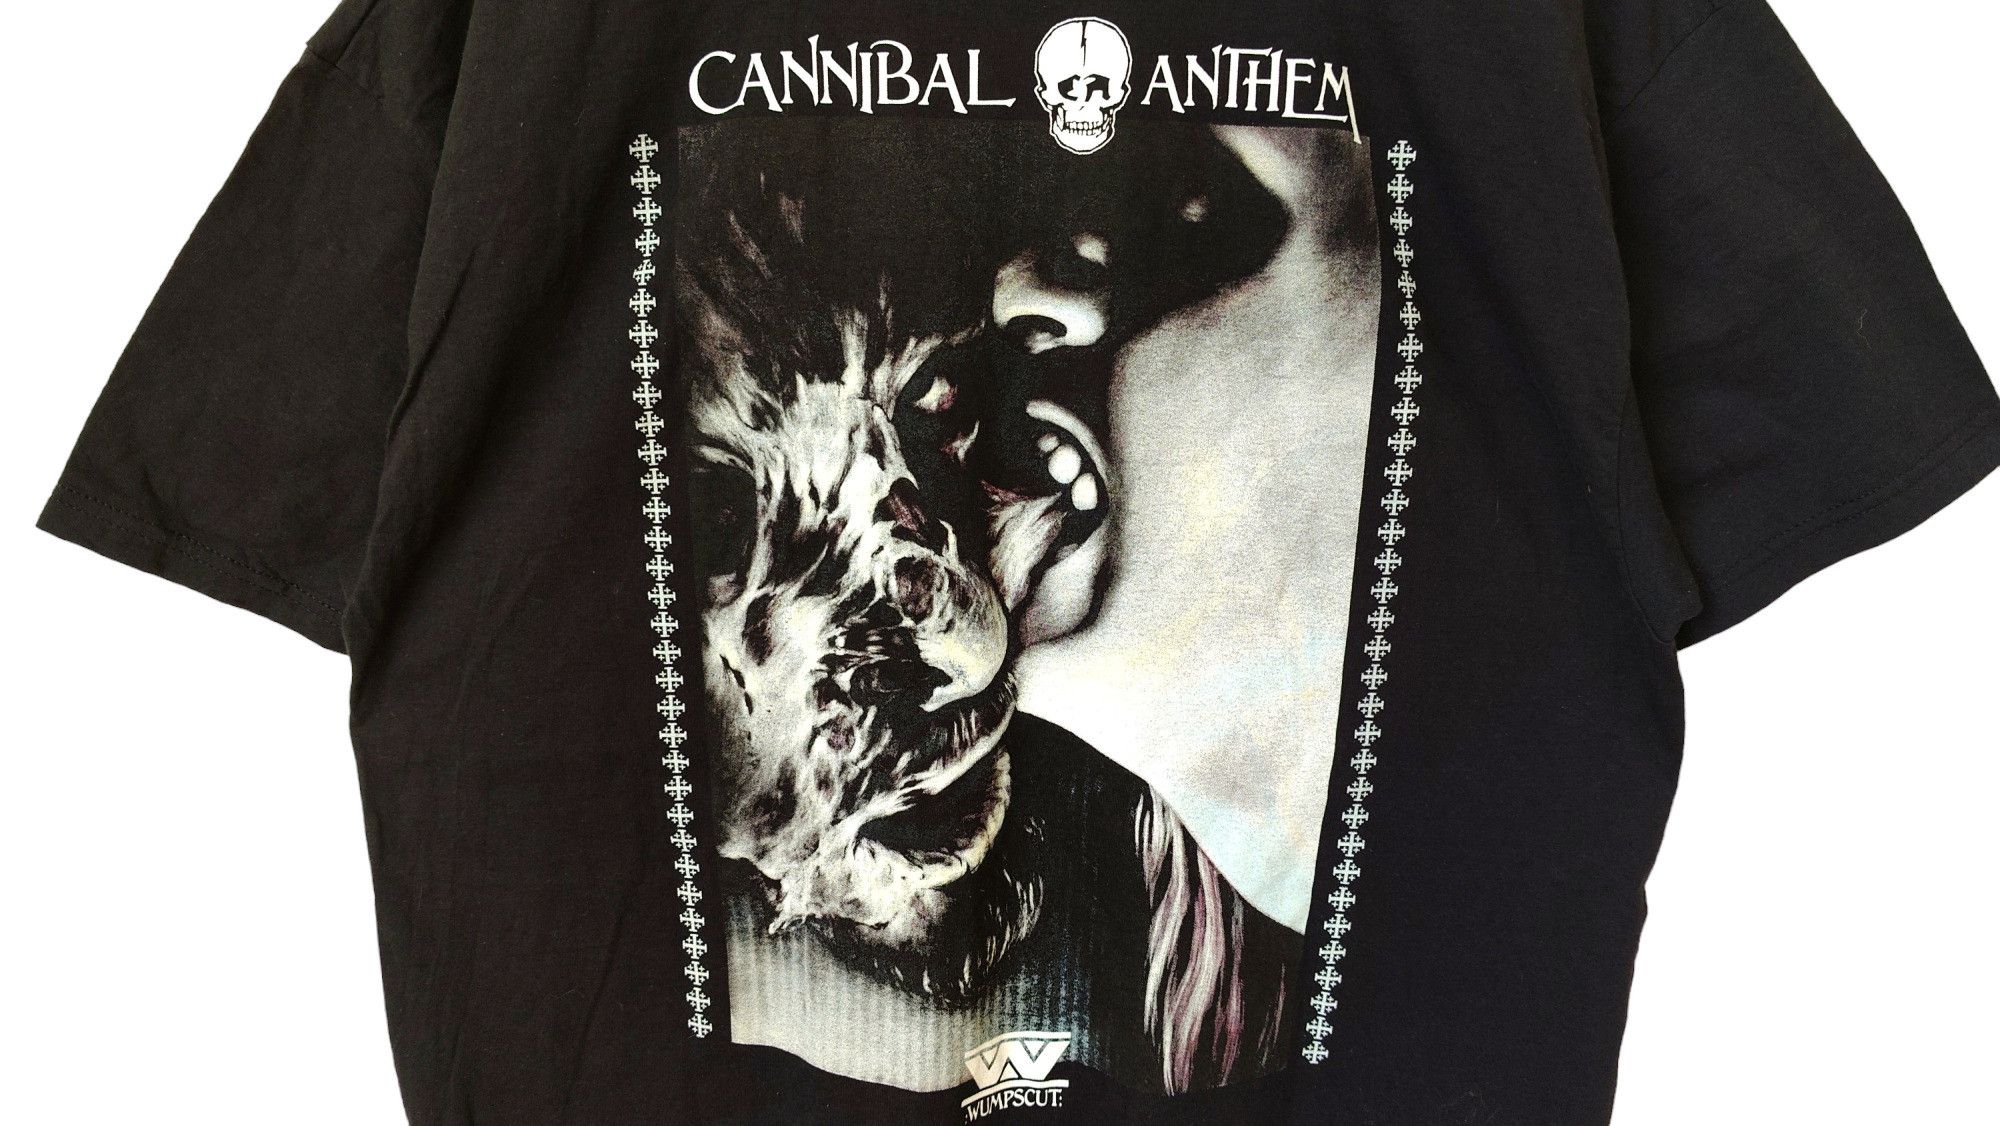 Vintage RARE Wumpscut Cannibal Anthem VTG 2006 Official tshirt Size US XL / EU 56 / 4 - 2 Preview